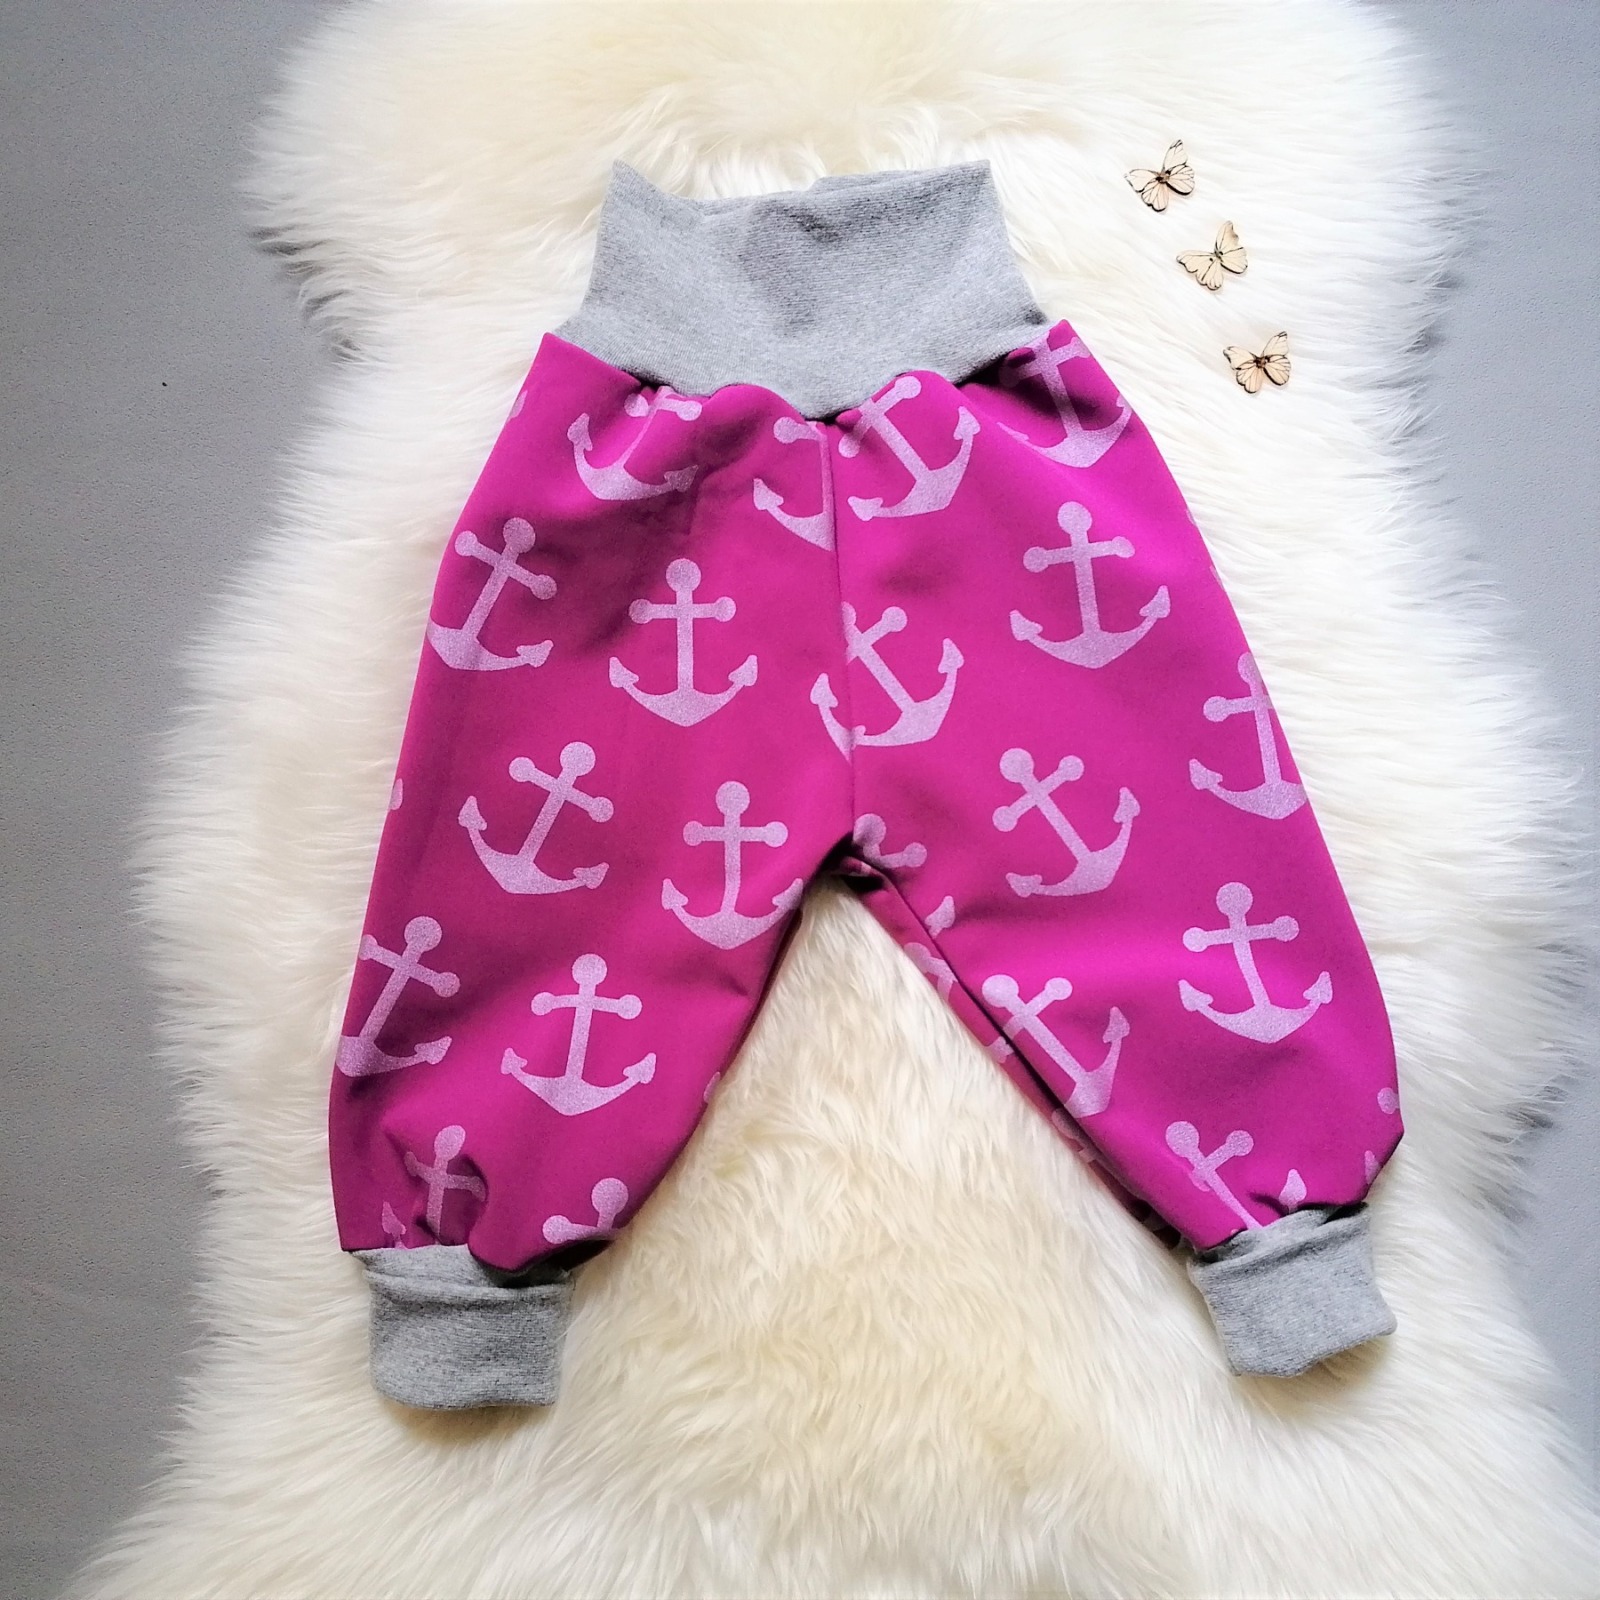 Kauf auf Bestellung Handmade Softshellhose Anker pink Gr 74-140 Nachtfalter-kreativ